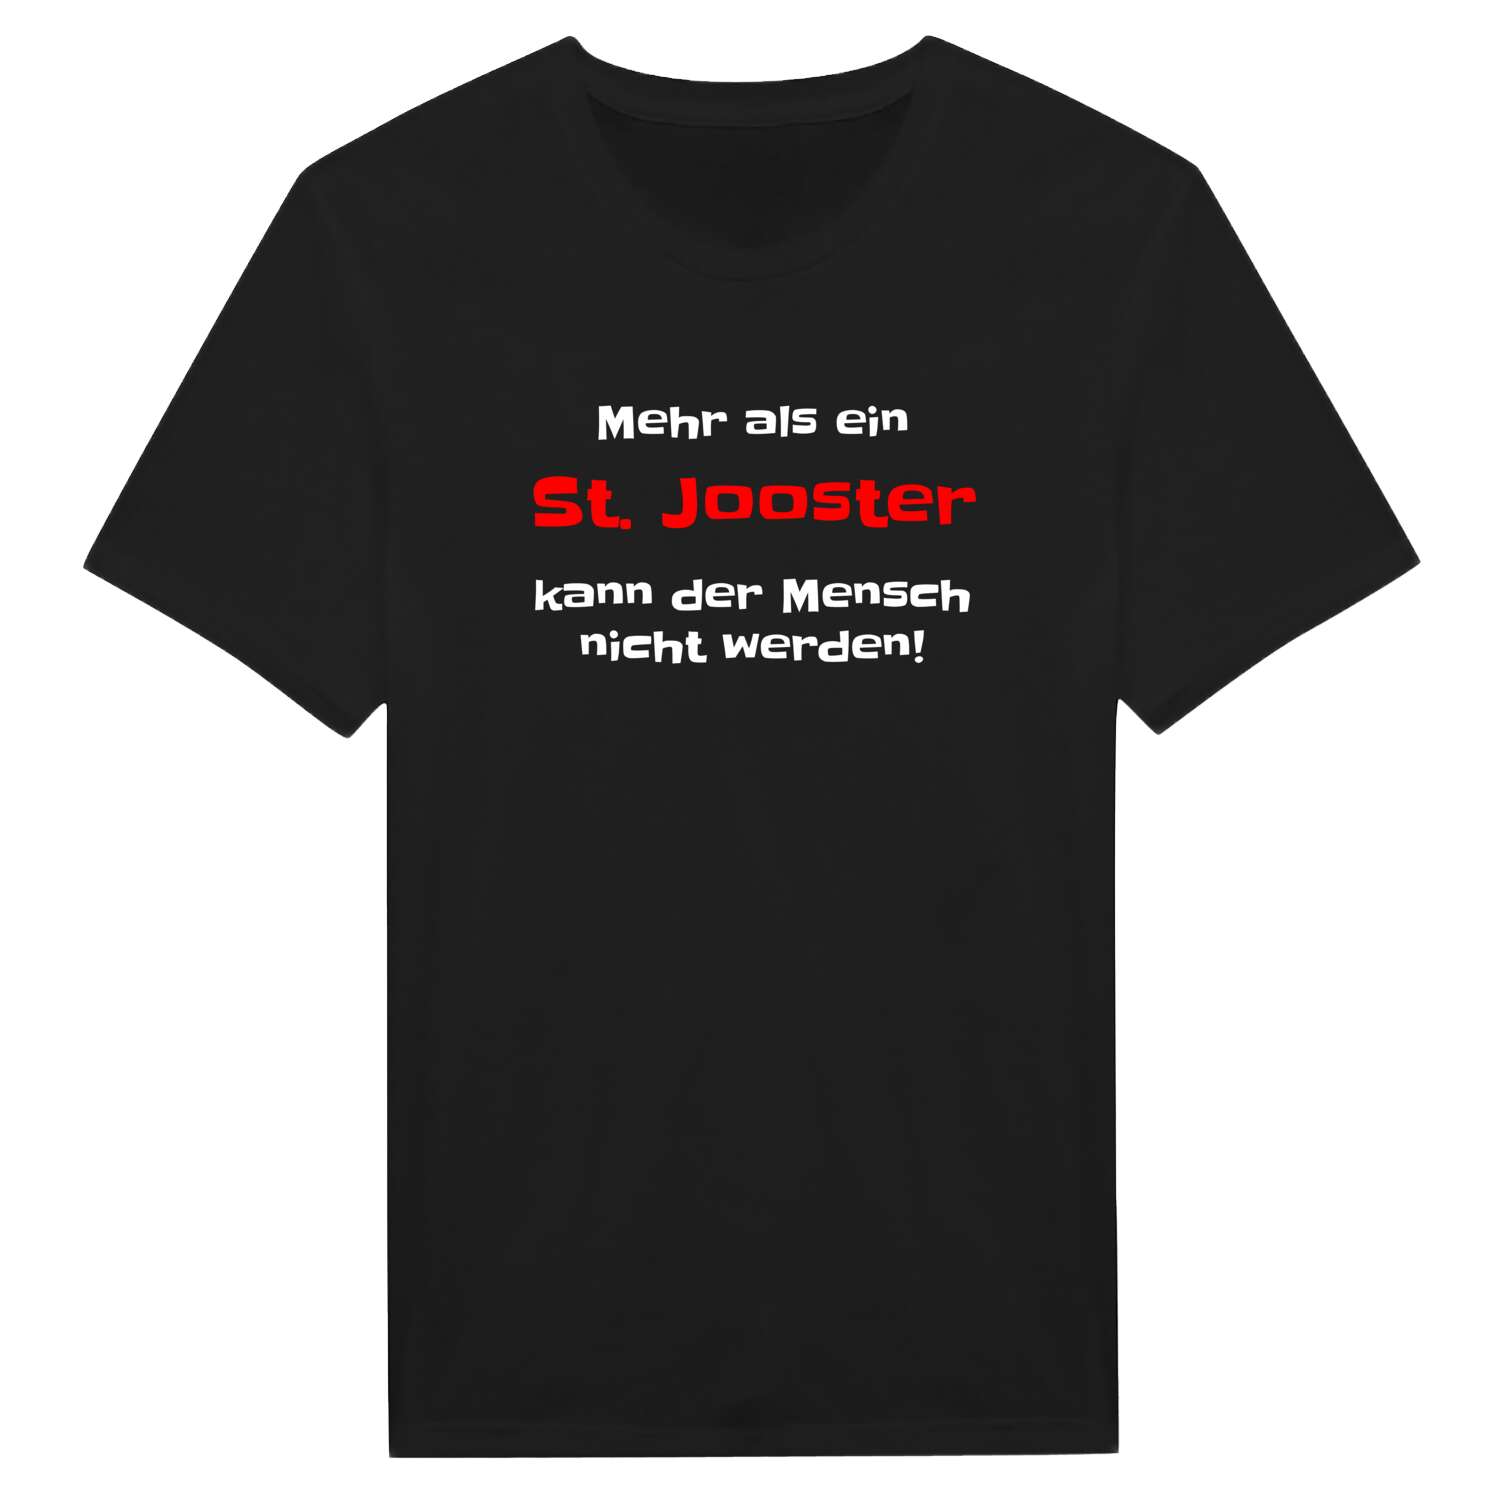 St. Joost T-Shirt »Mehr als ein«